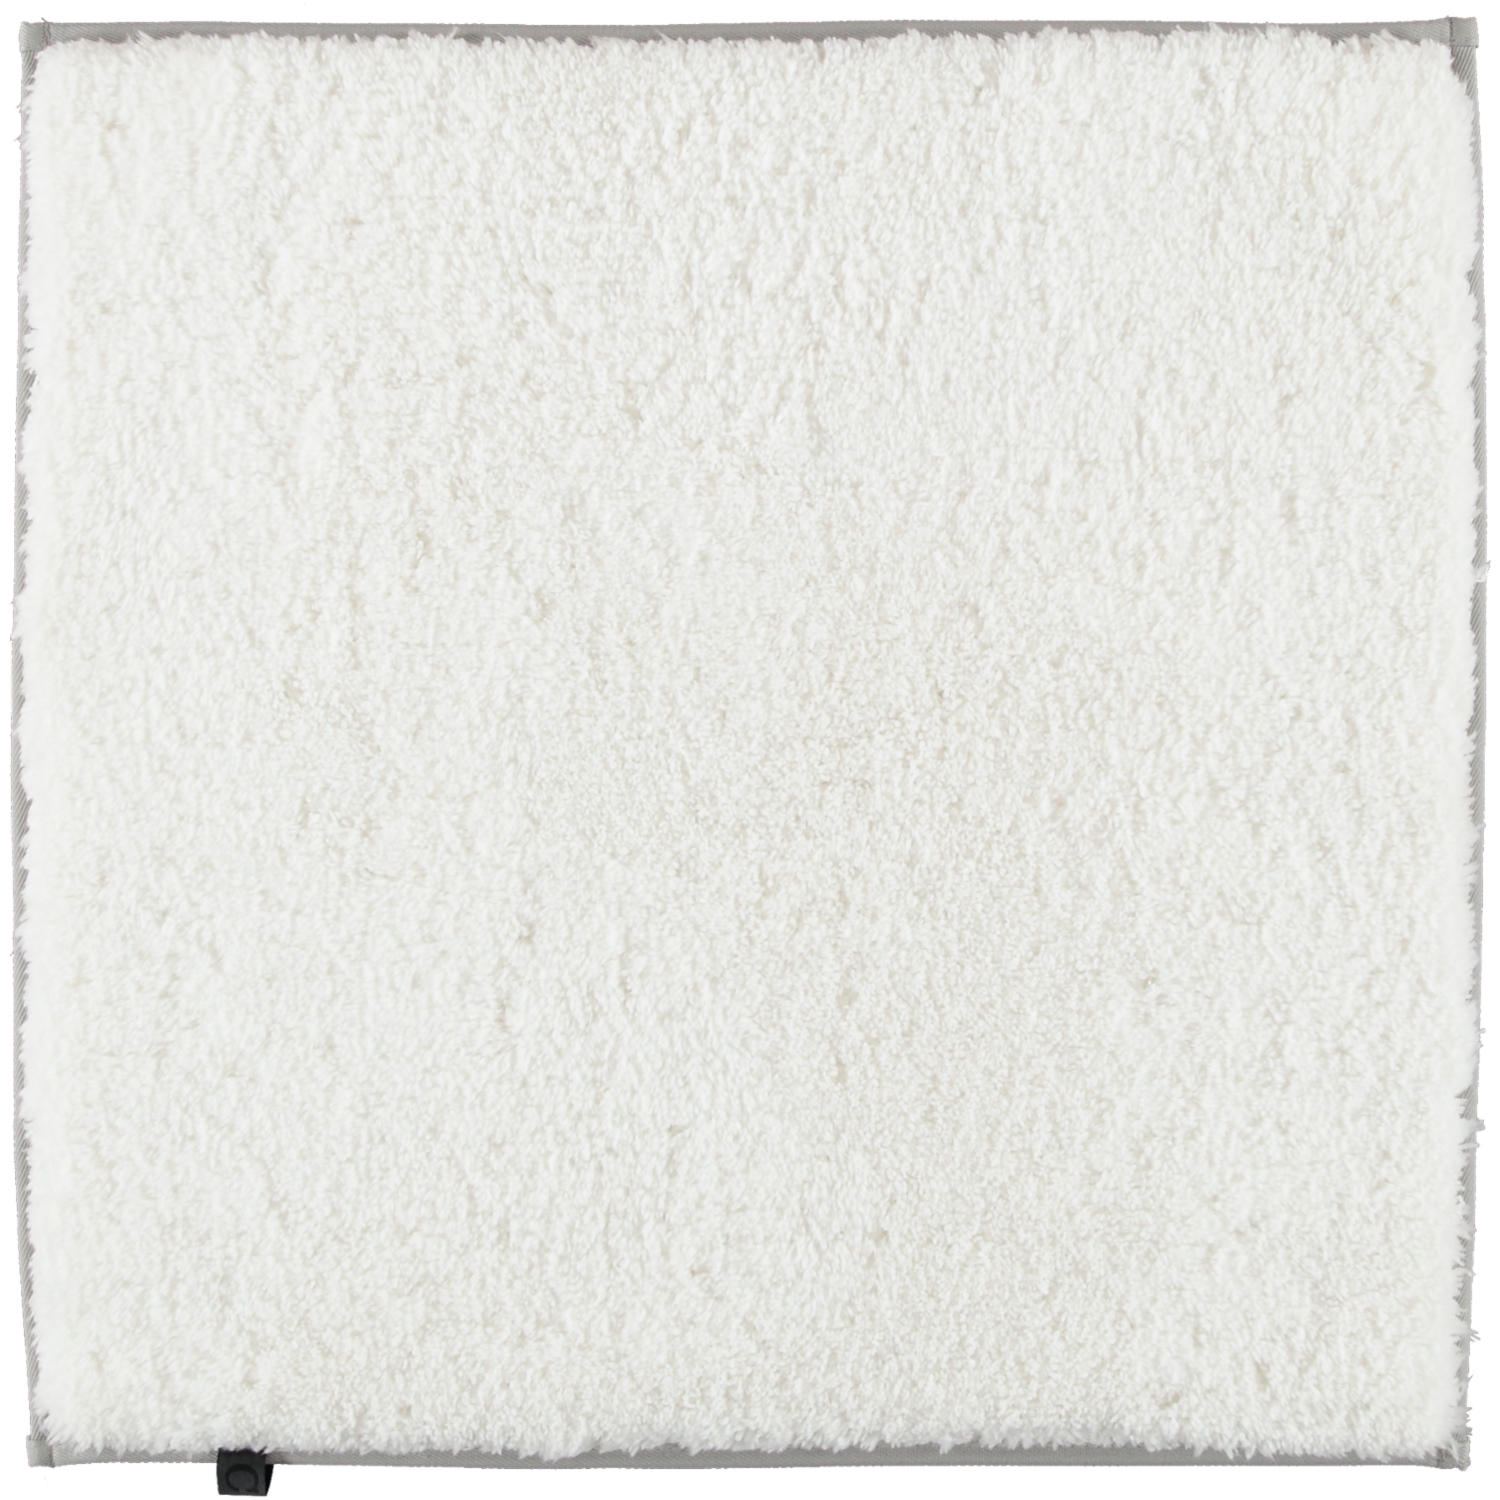 BADTEPPICH  Frame 60/60 cm  - Weiß, Basics, Textil (60/60cm) - Cawoe